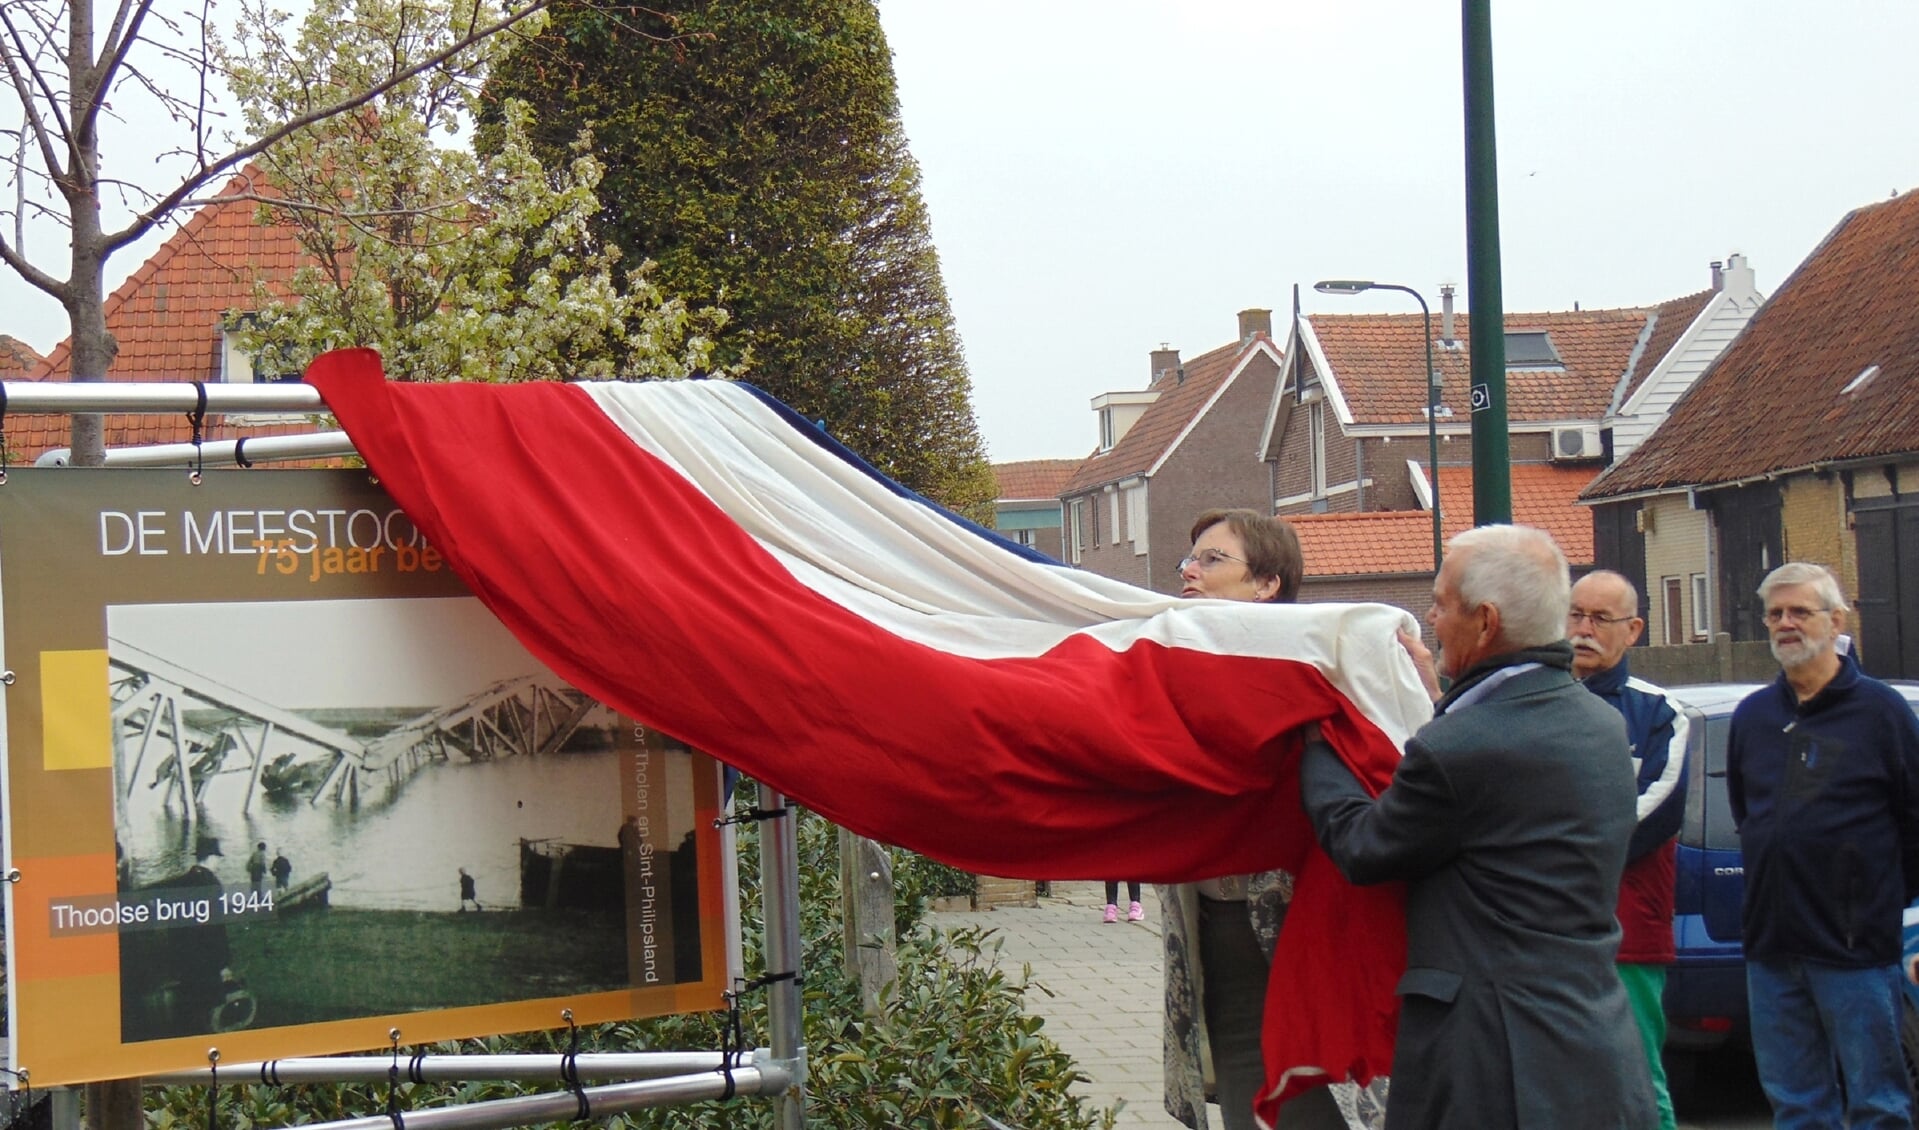 Burgemeester Ger van de Velde en voorzitter Arie van der Zwan onthullen samen de banner voor de nieuwe tentoonstelling in De Meestoof. FOTO JEFFREY HAGE